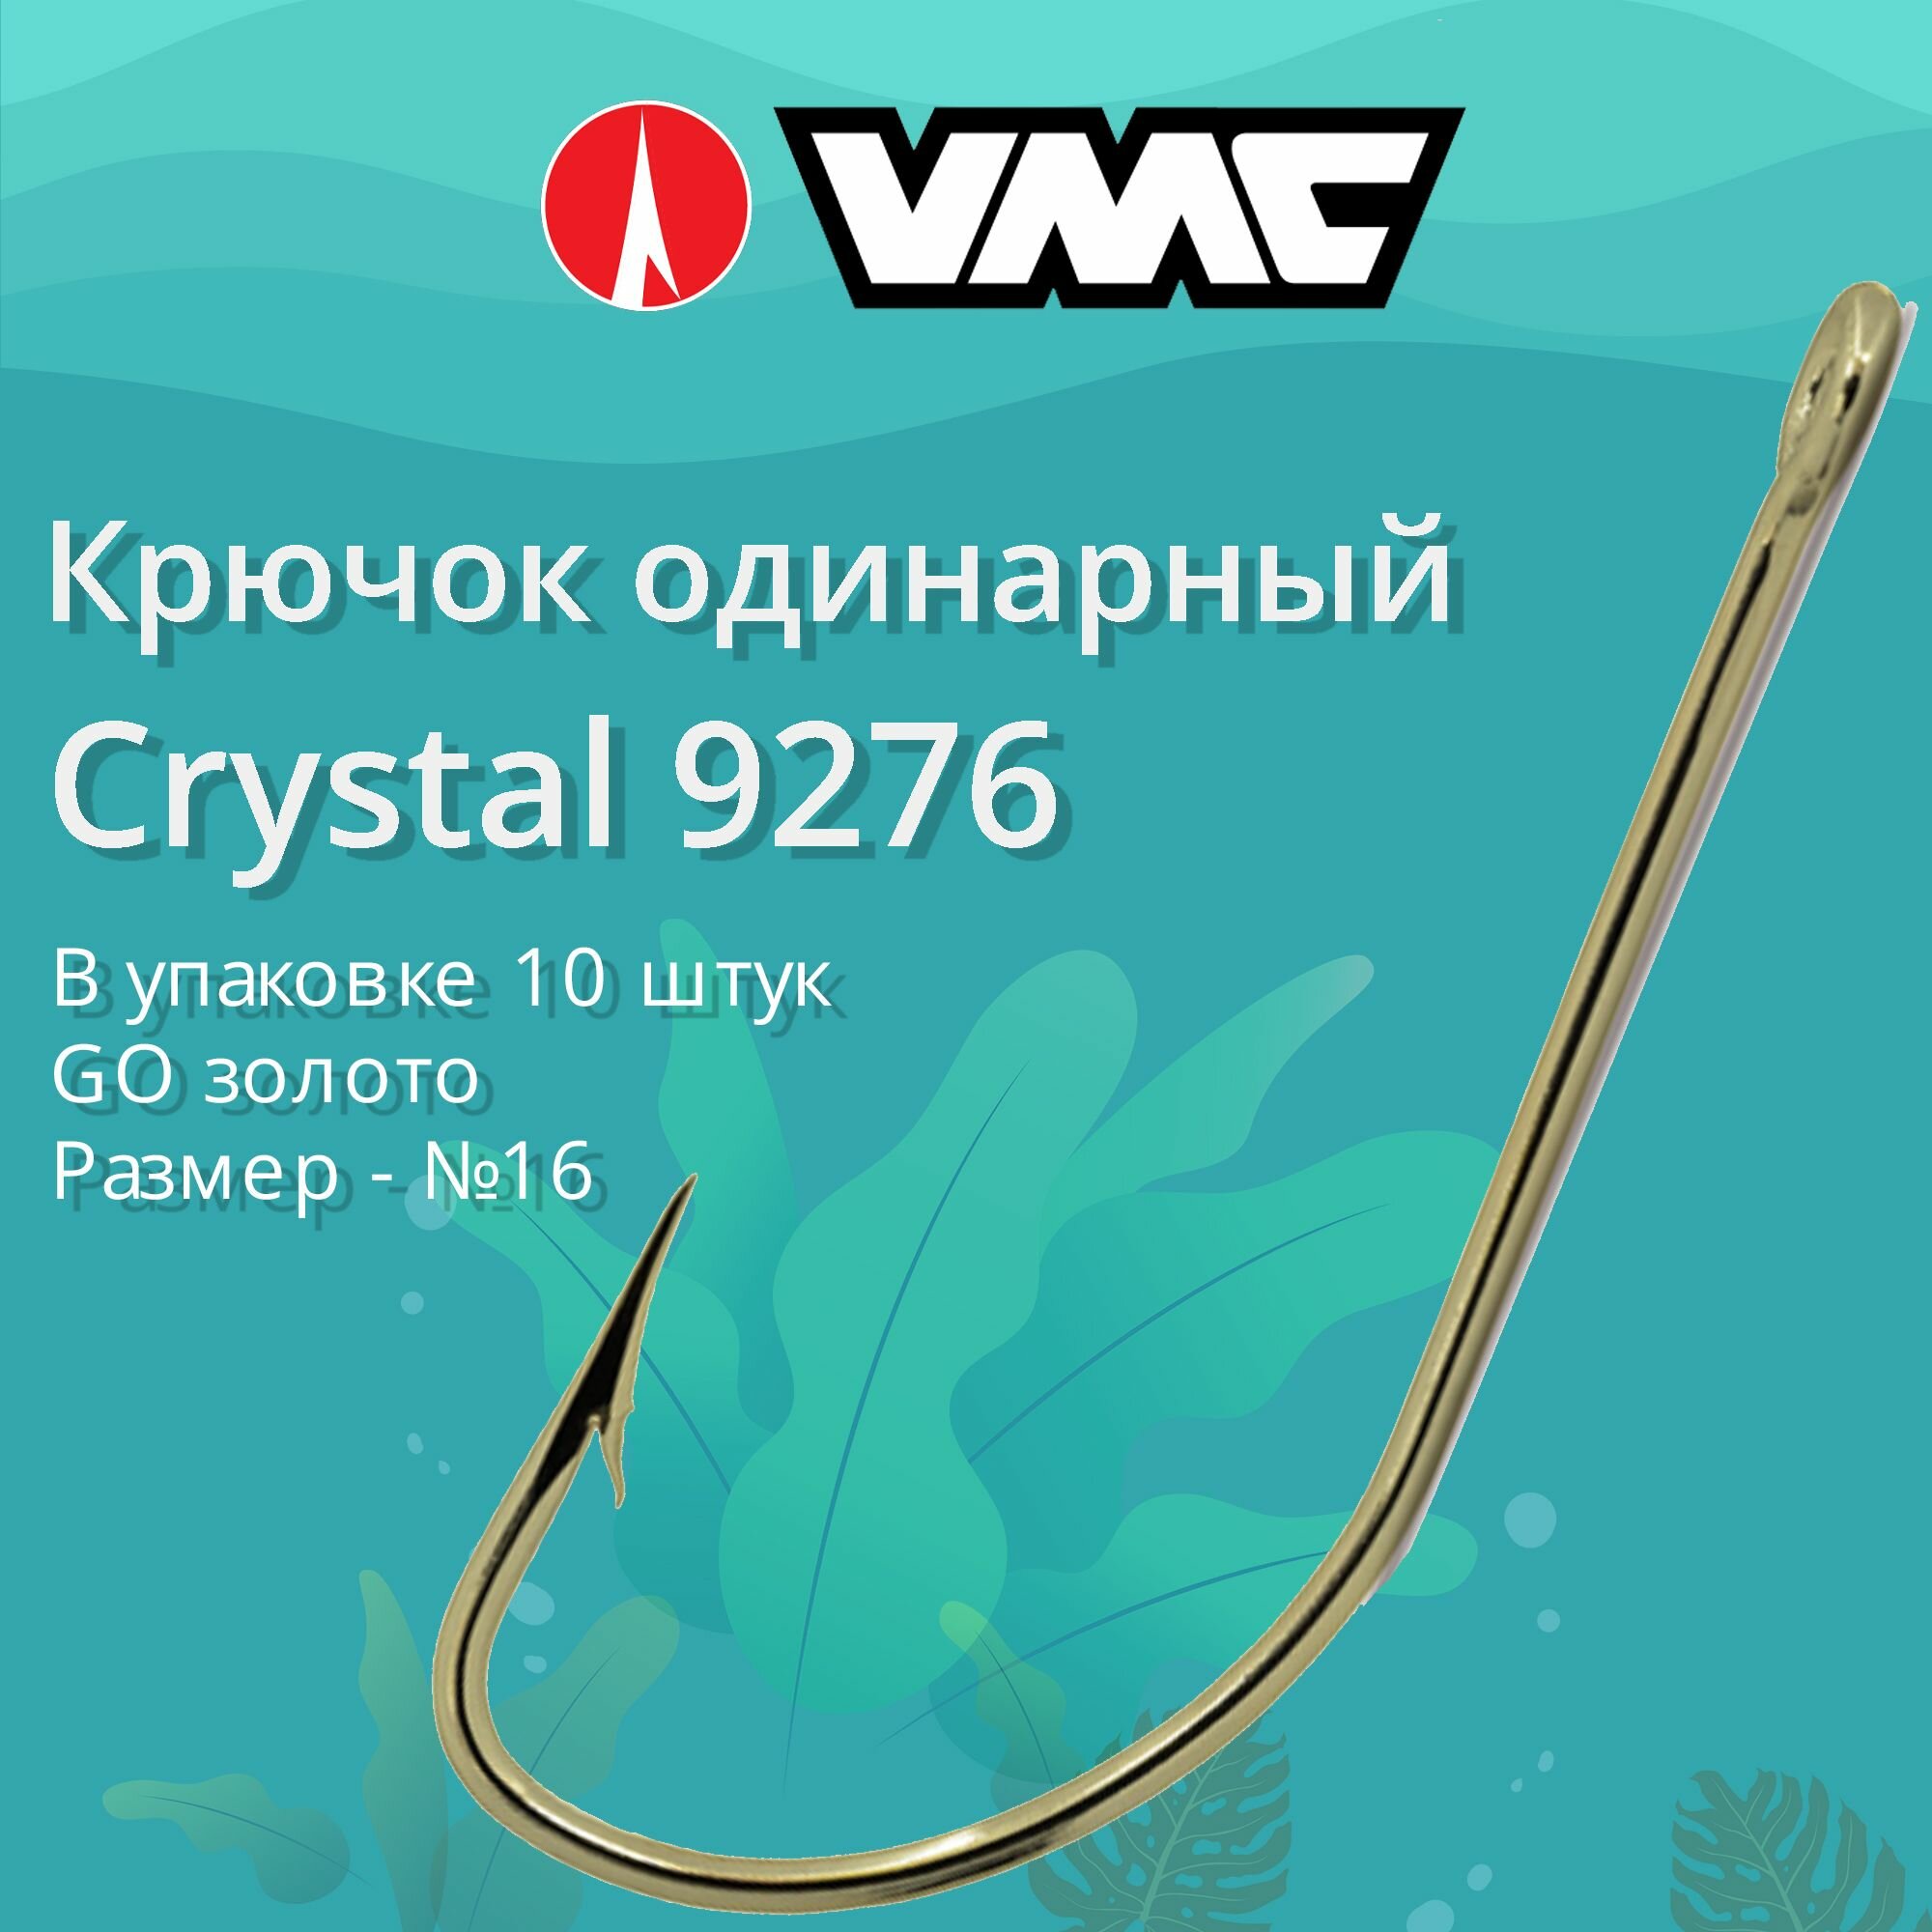 Крючки для рыбалки (одинарный) VMC Crystal 9276 GO (золото) №16 упаковка 10 штук